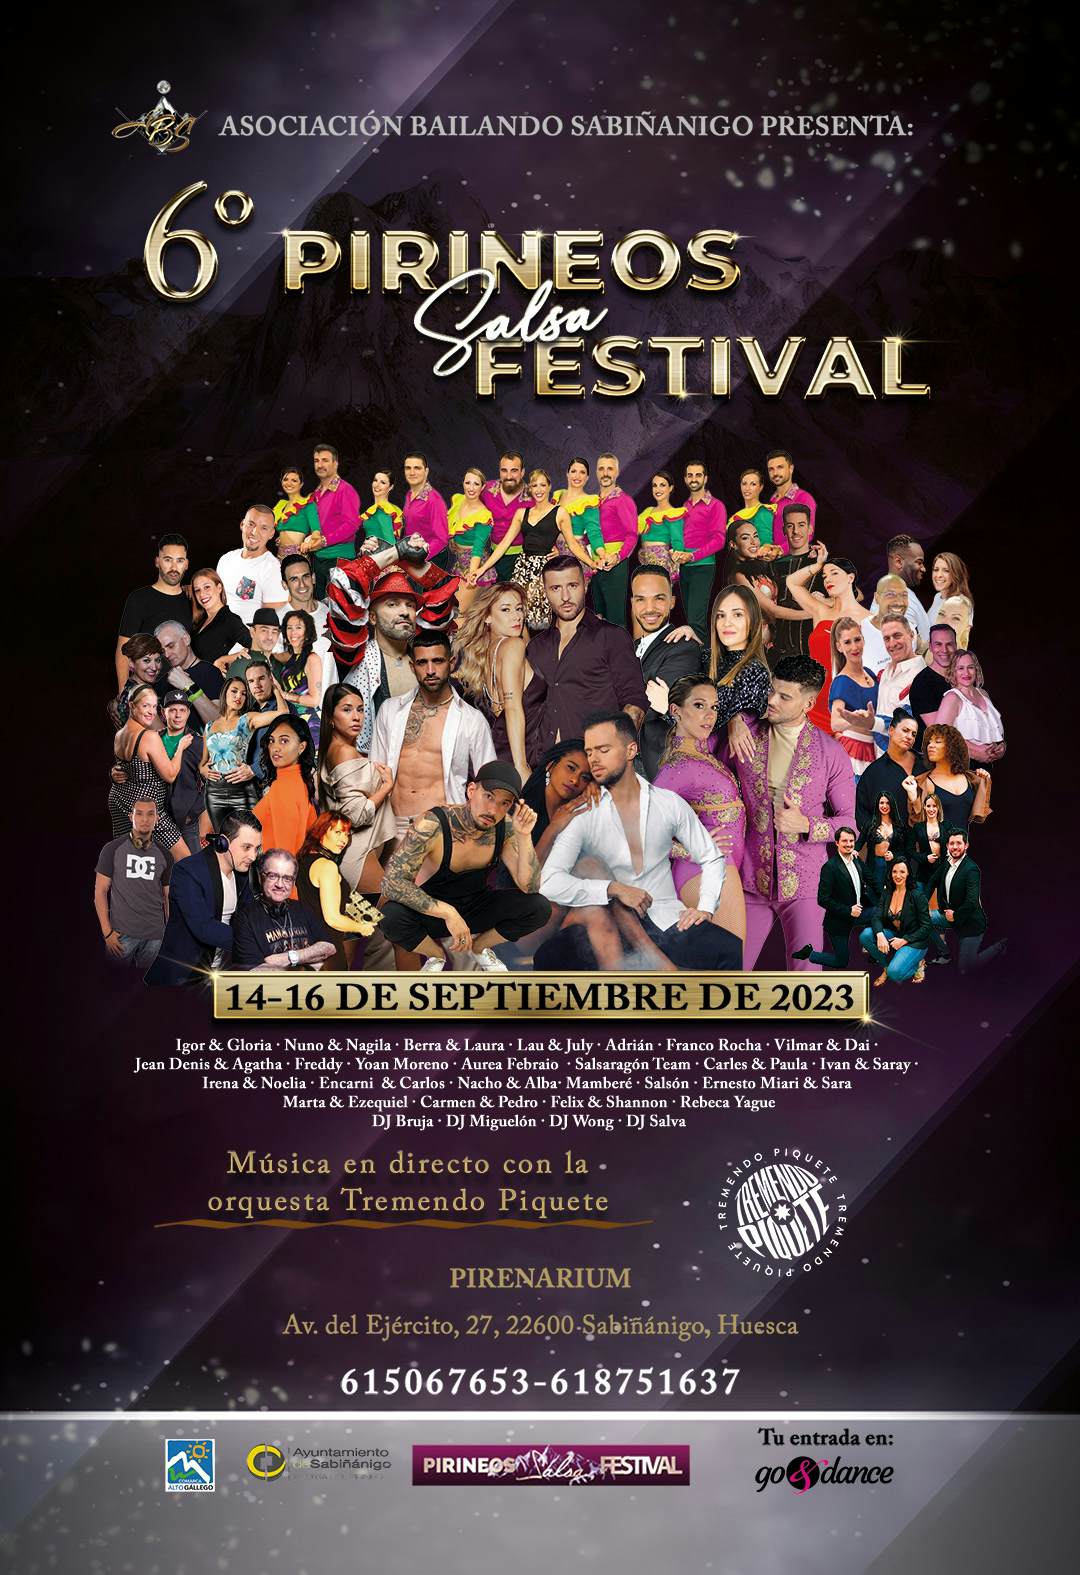 Pirineos Salsa Festival 2023 (6ª Edición) go&dance